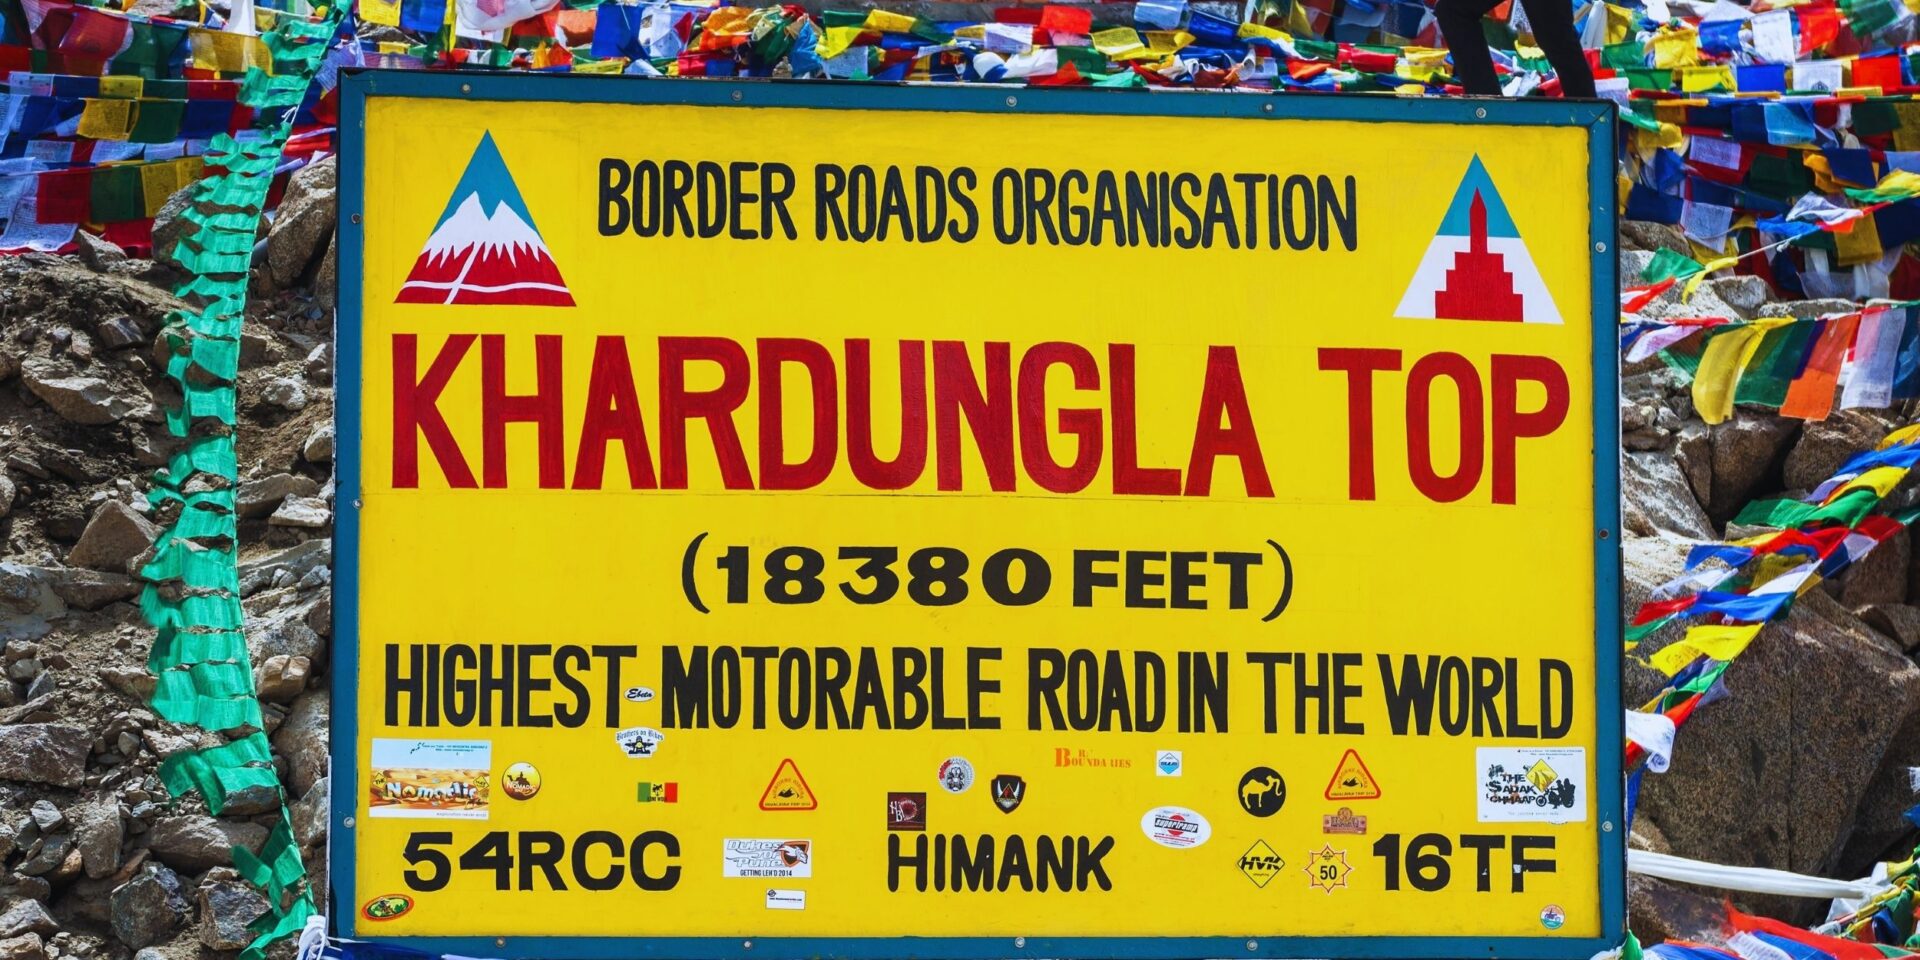 Khardungla pass